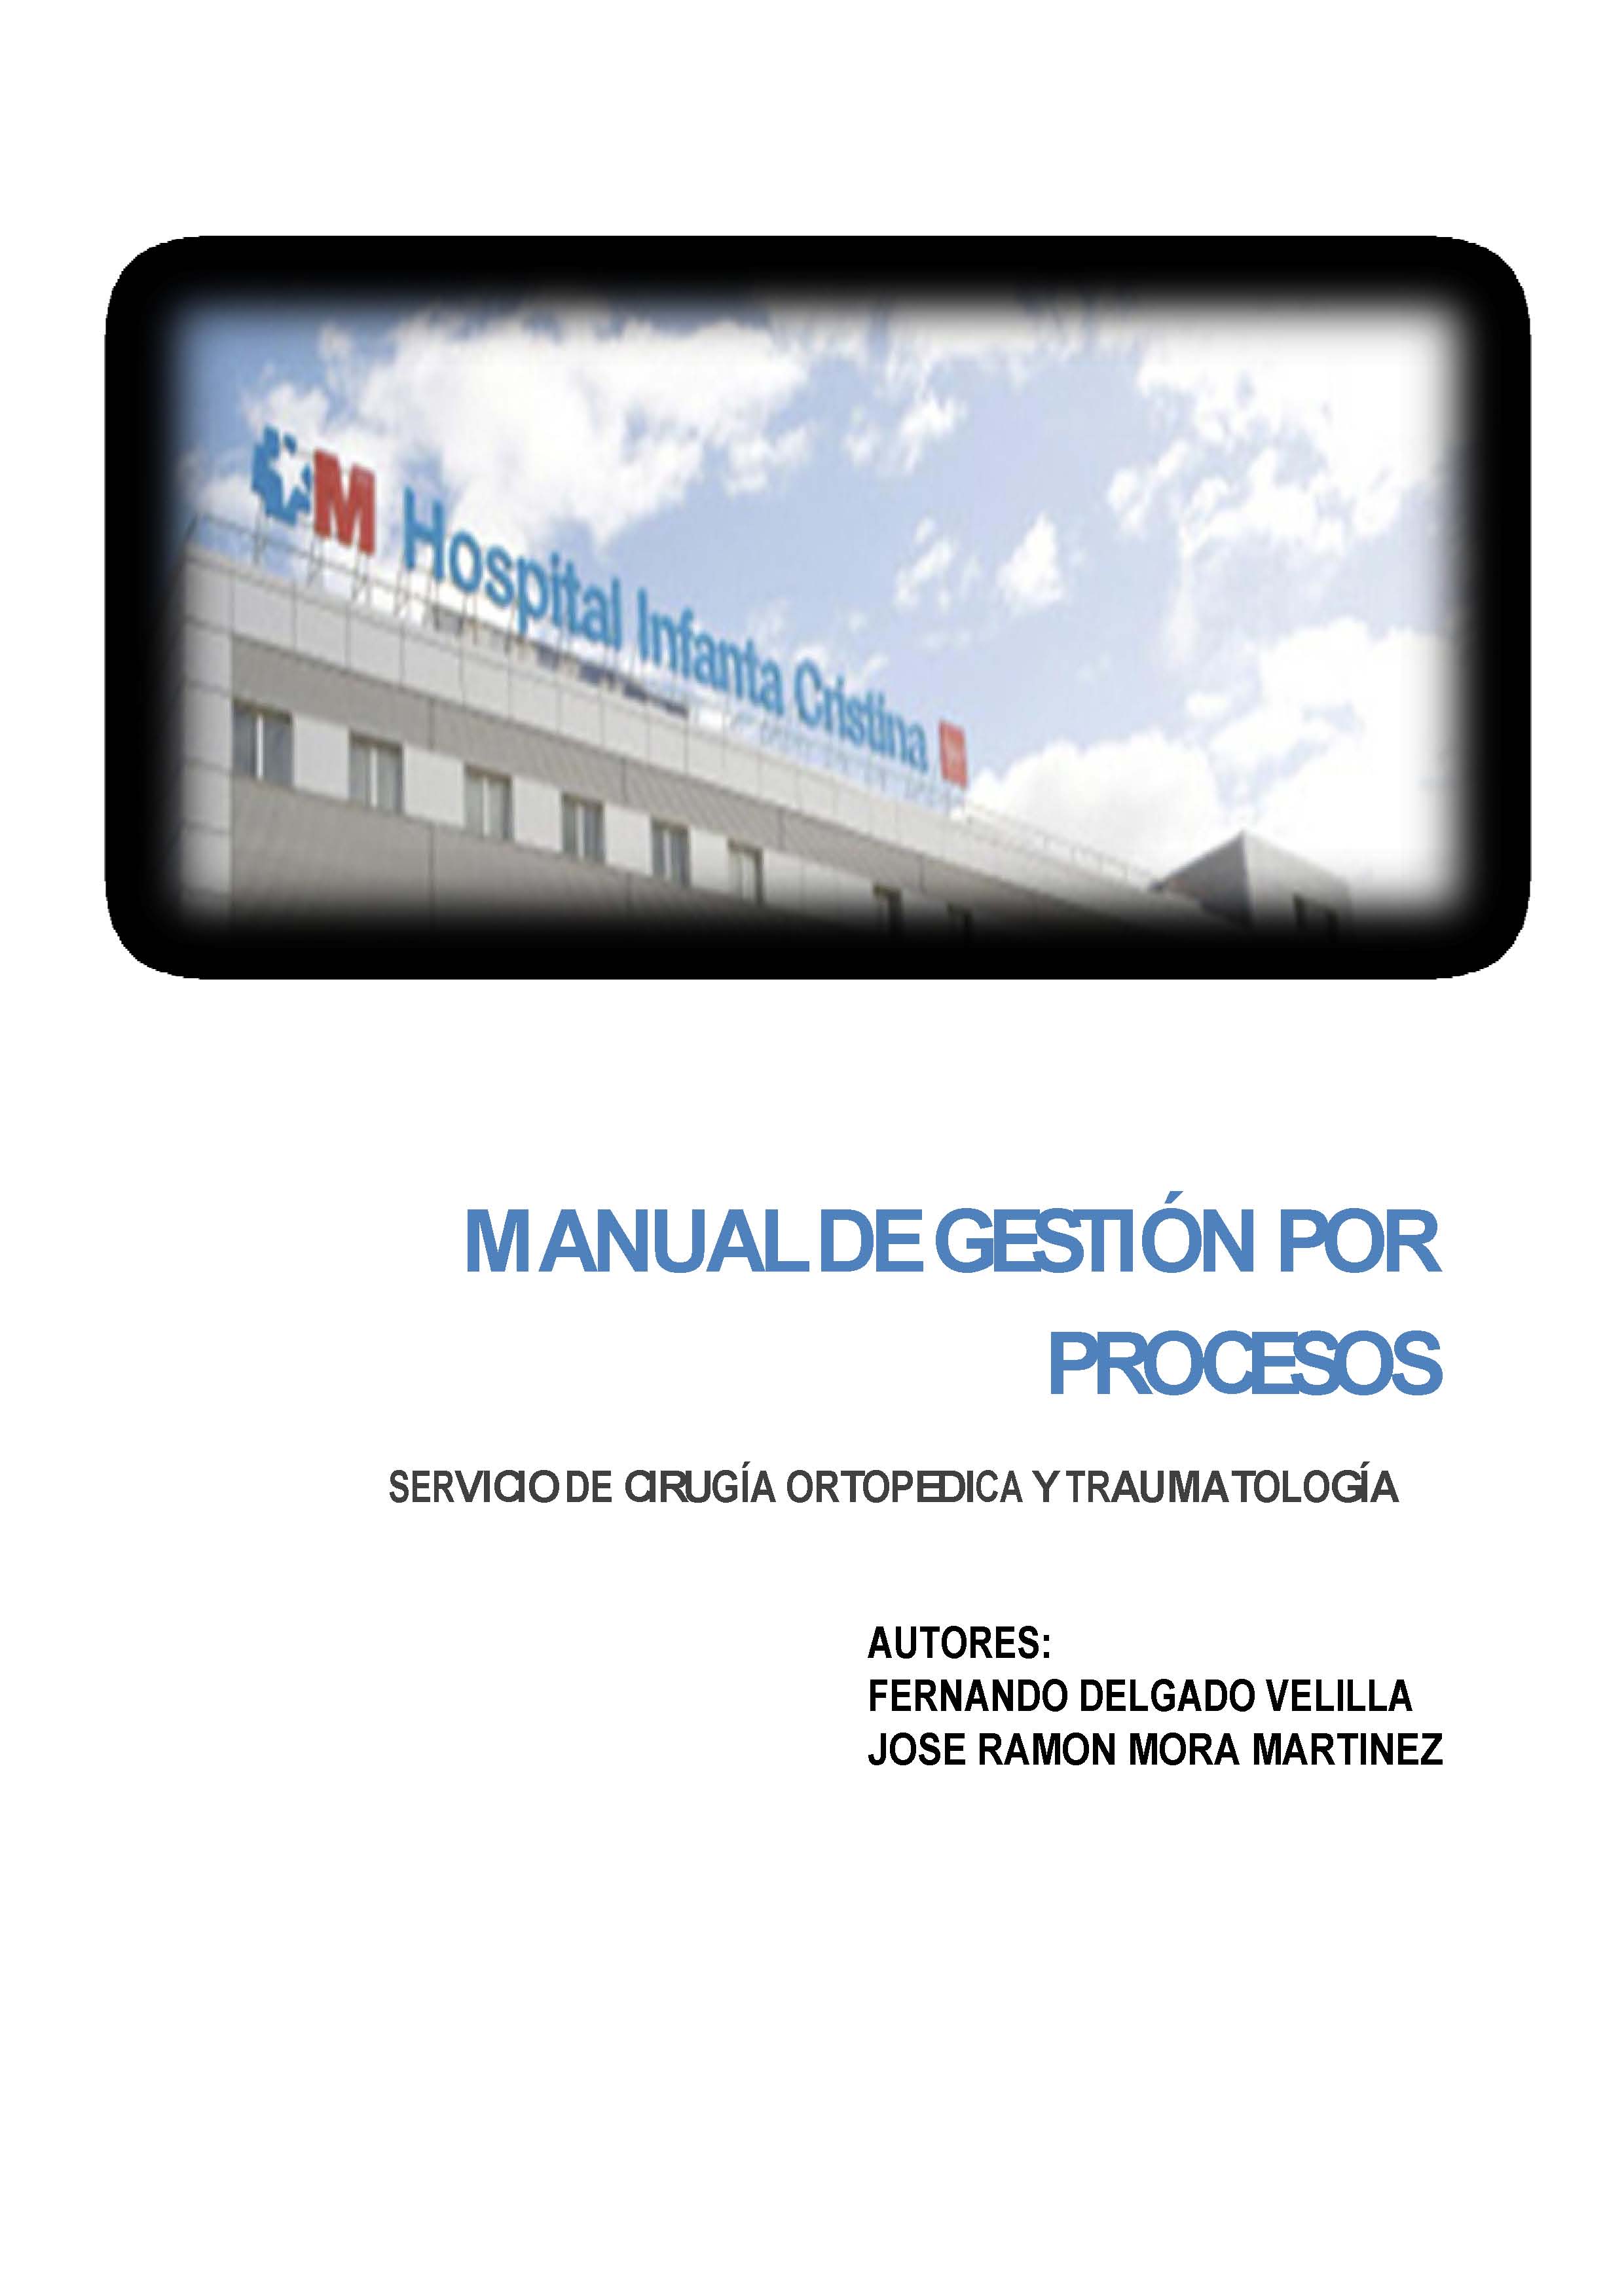 Portada de Manual de Gestión por Procesos. Servicio de cirugía ortopedica y traumatología (Hospital Universitario Infanta Cristina)